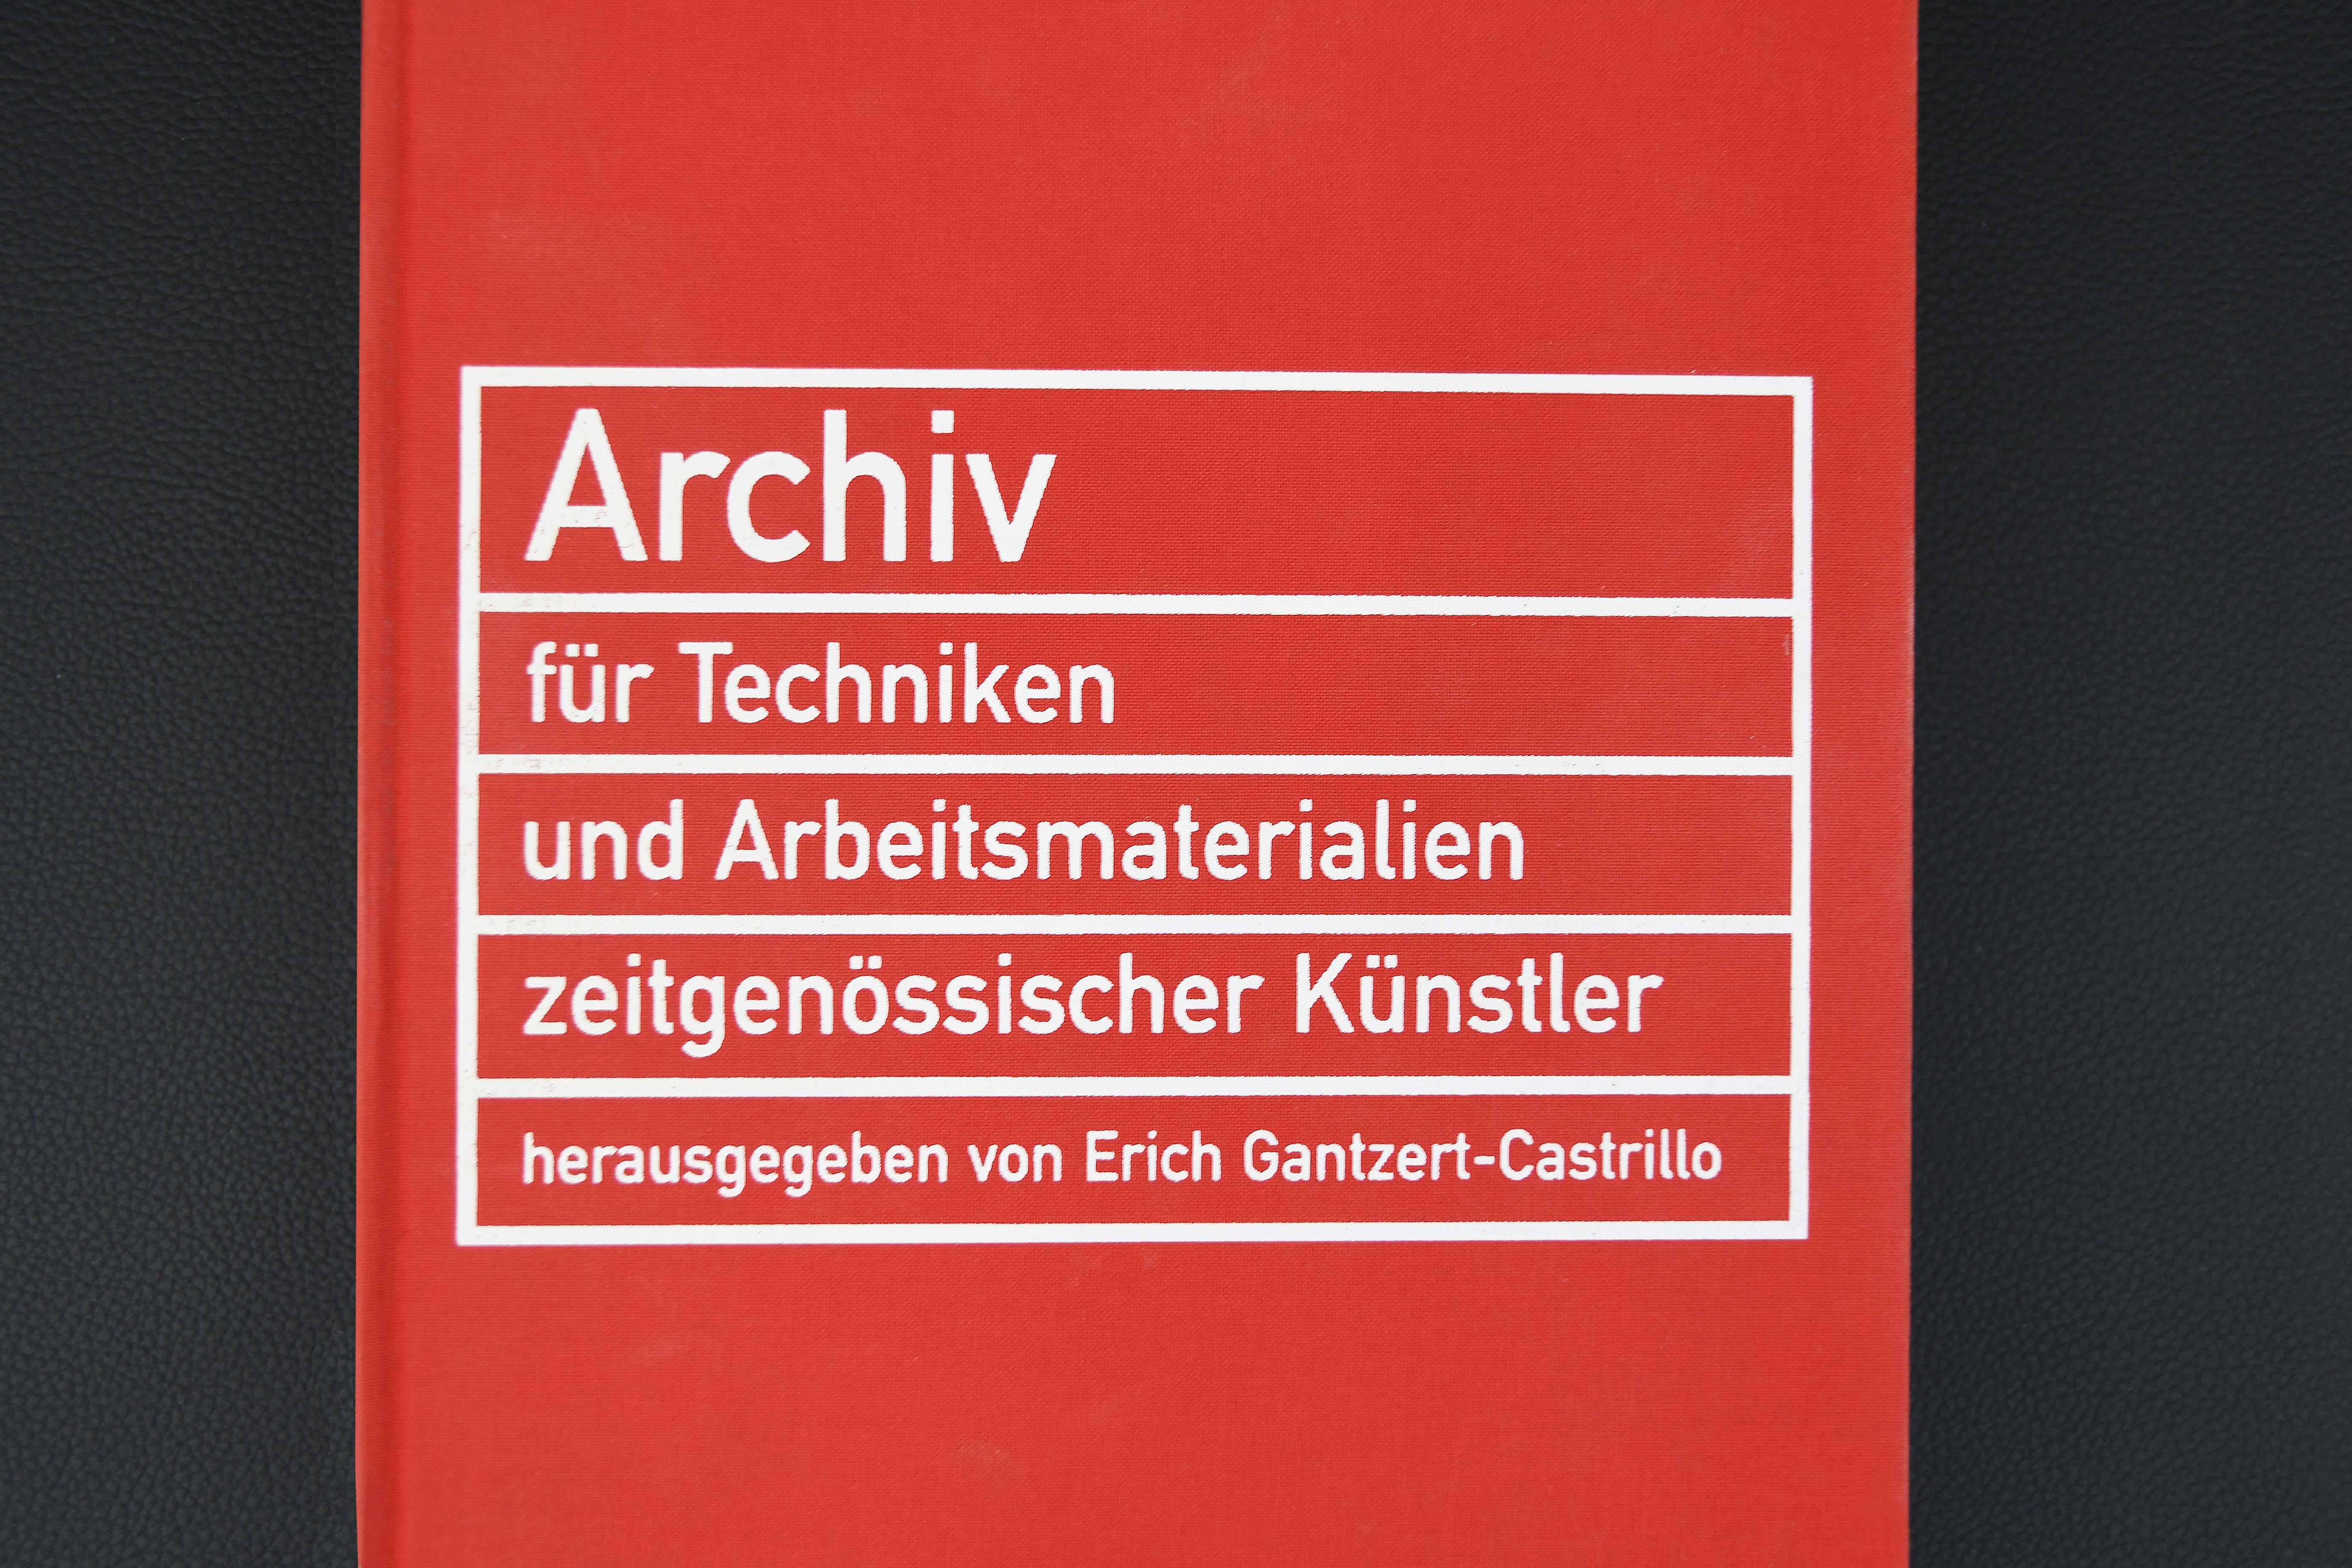 Picture of the book "Archiv für Techniken und Arbeitsmaterialien zeitgenössischer Künstler"